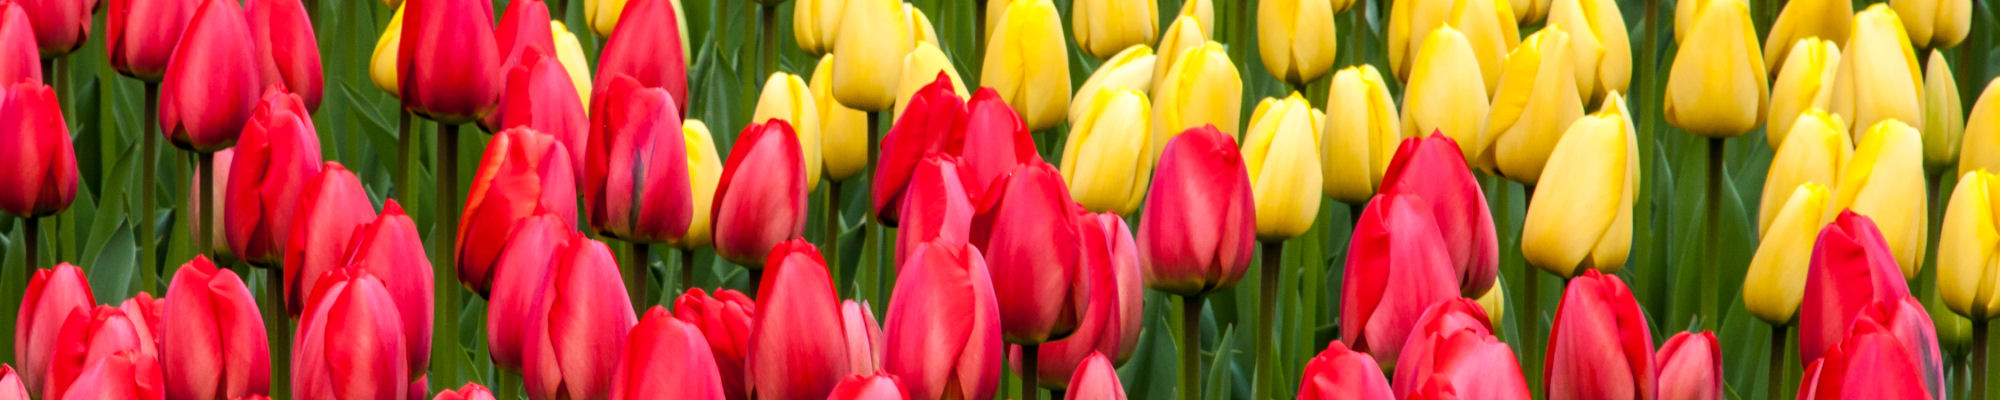 images/slides/tulips-zijpe.jpg